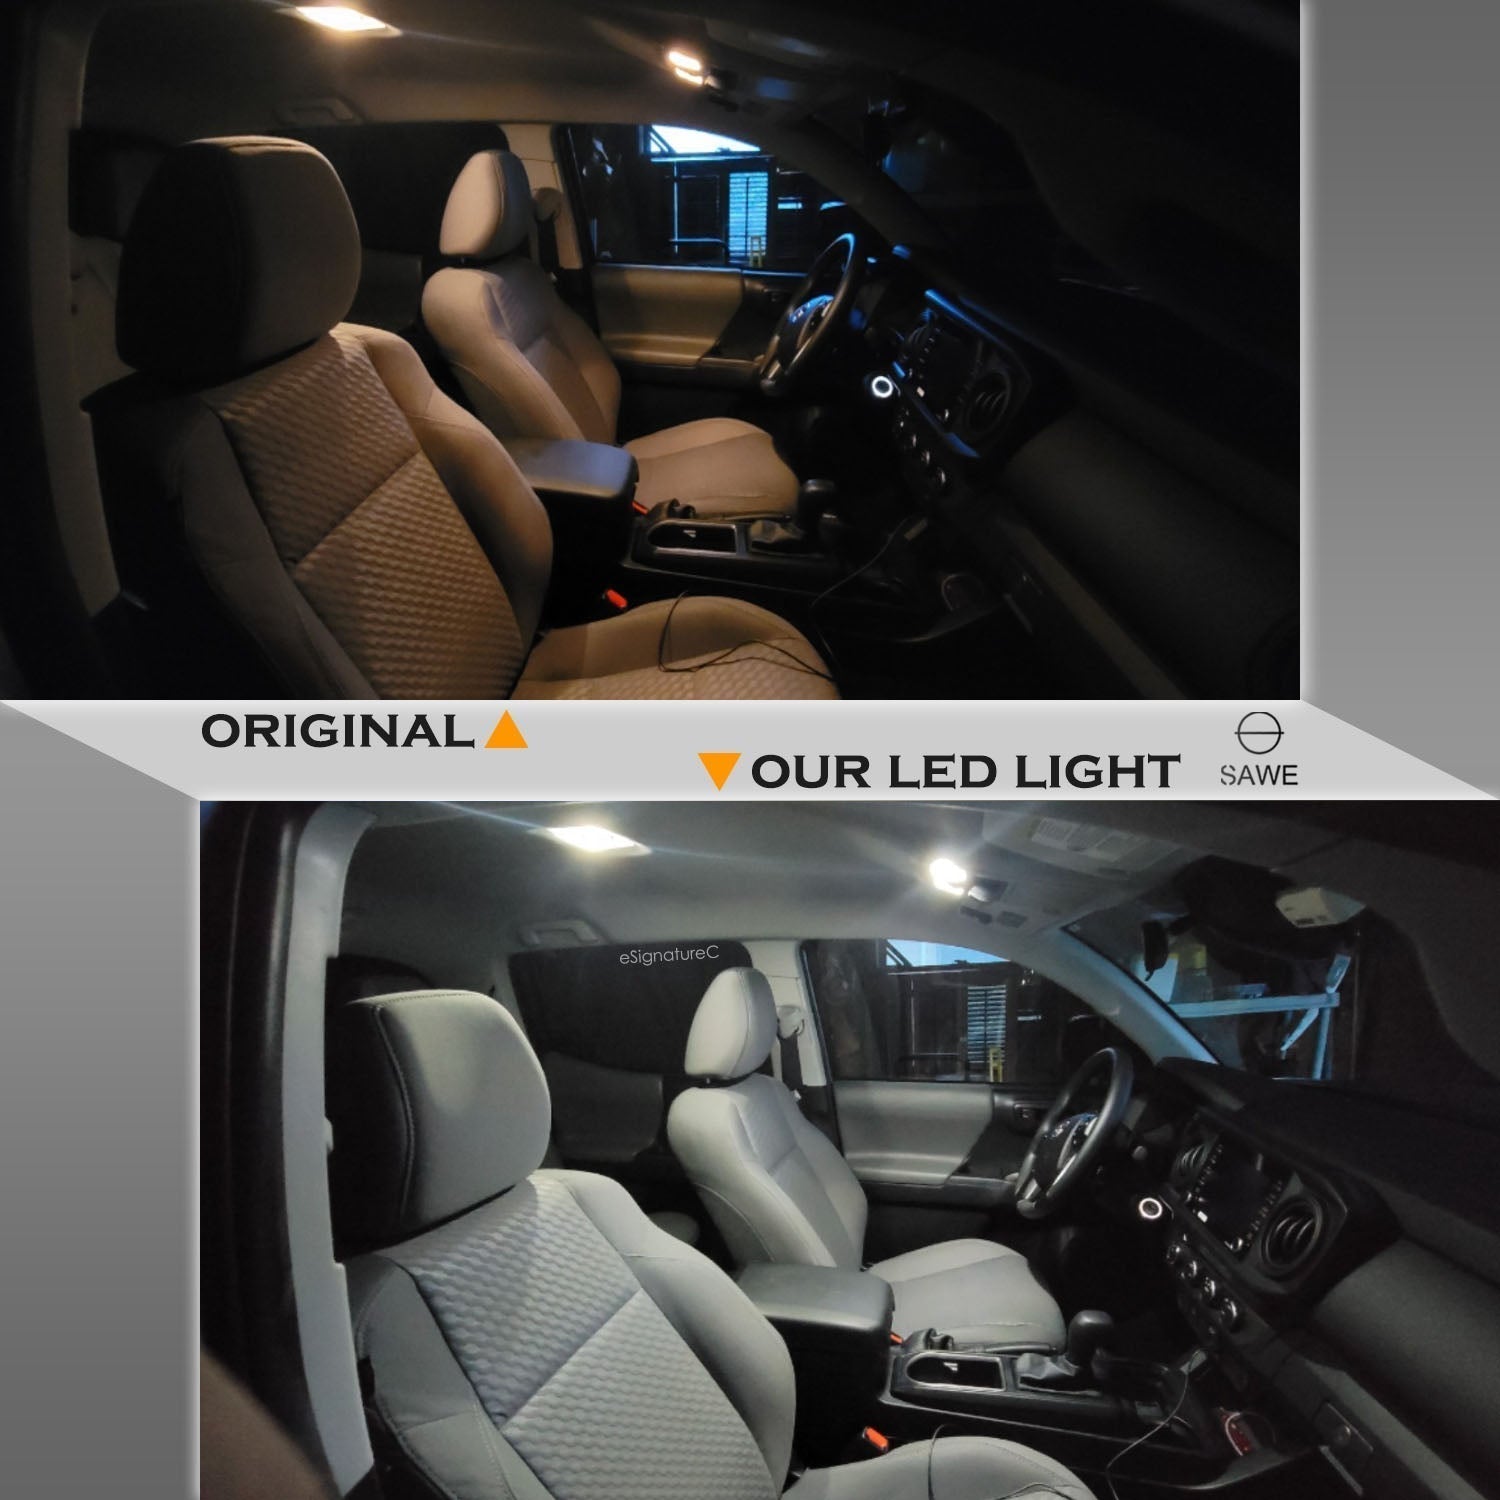 For Chrysler Aspen Interior LED Lights - Dome & Map Light Bulbs Package Kit for 2007 - 2009 - White